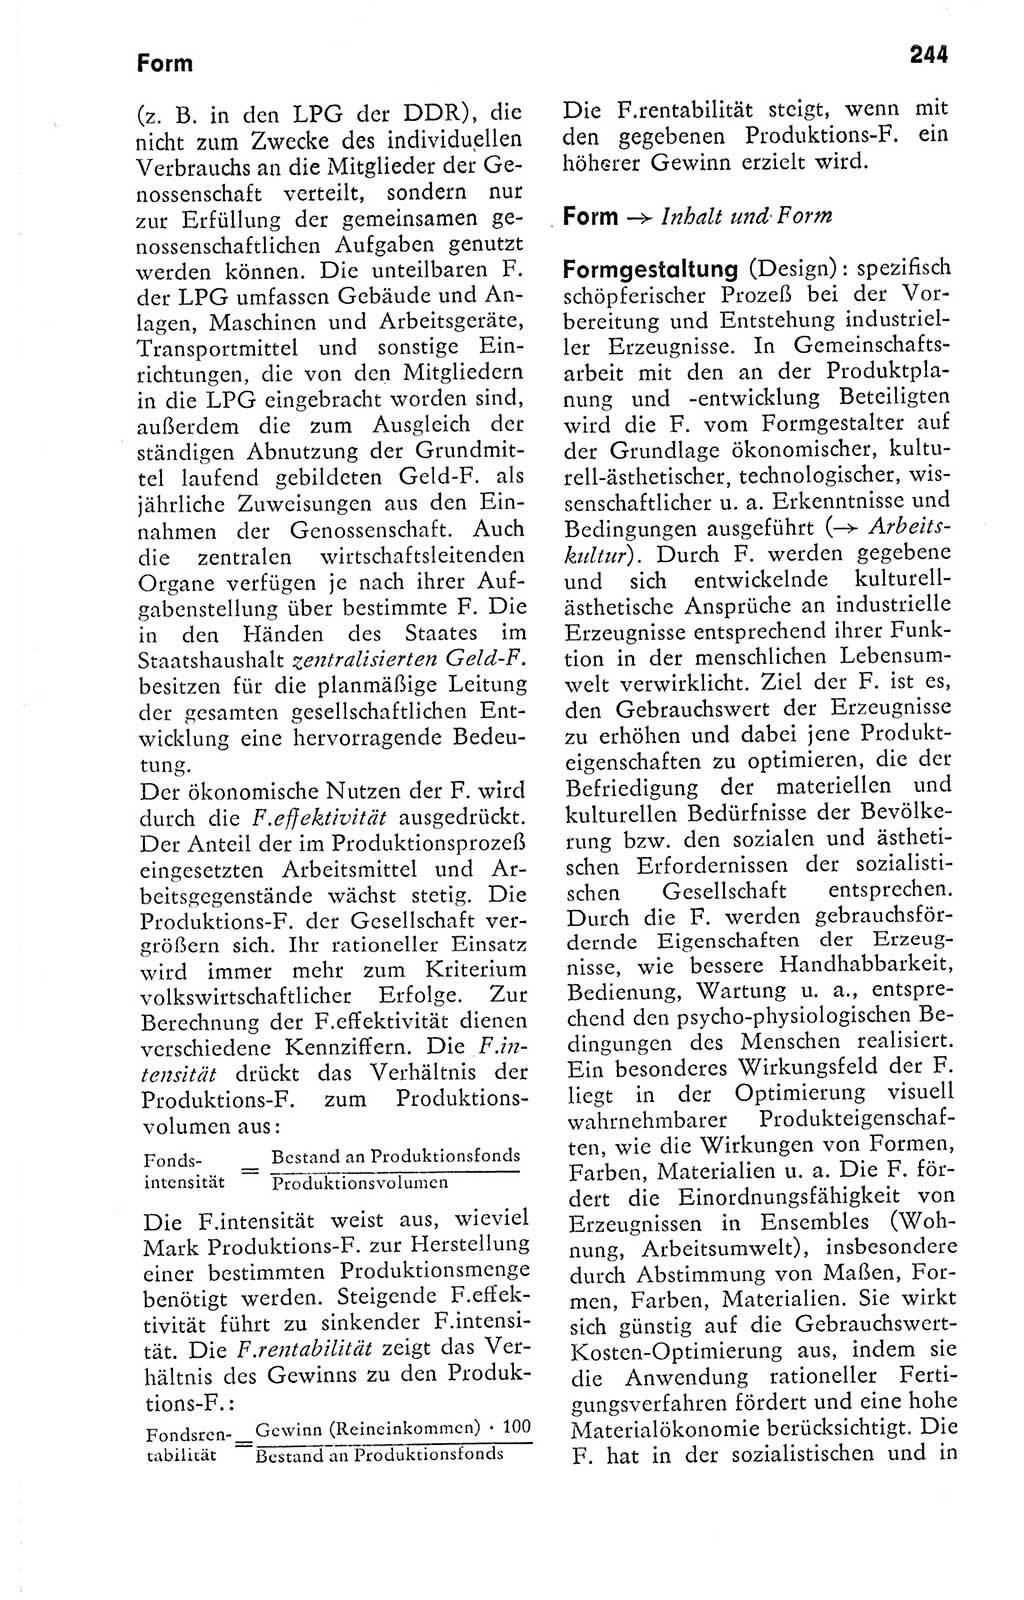 Kleines politisches Wörterbuch [Deutsche Demokratische Republik (DDR)] 1978, Seite 244 (Kl. pol. Wb. DDR 1978, S. 244)